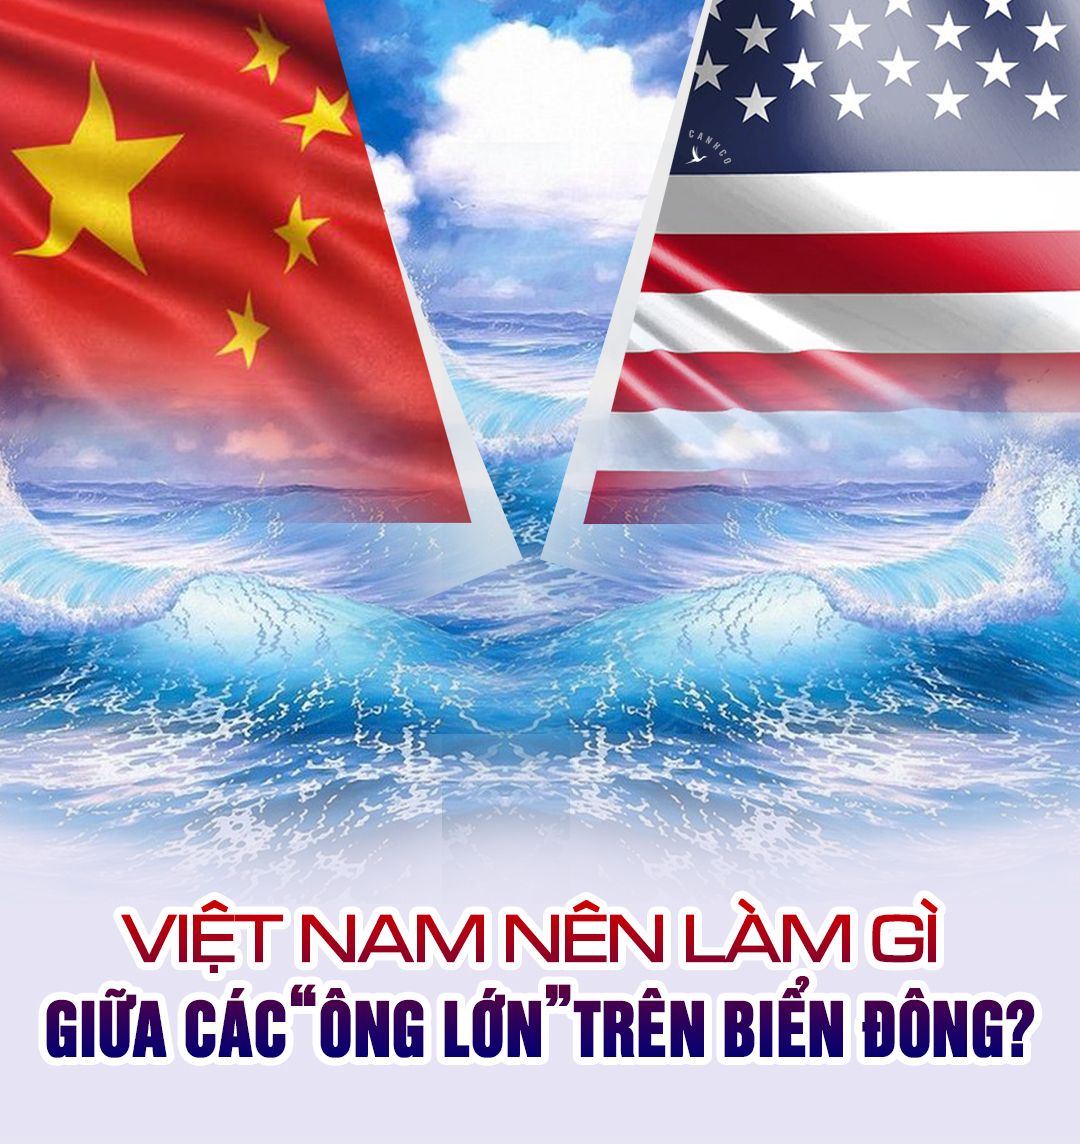 Việt Nam nên làm gì giữa các “ông lớn” trên Biển Đông?